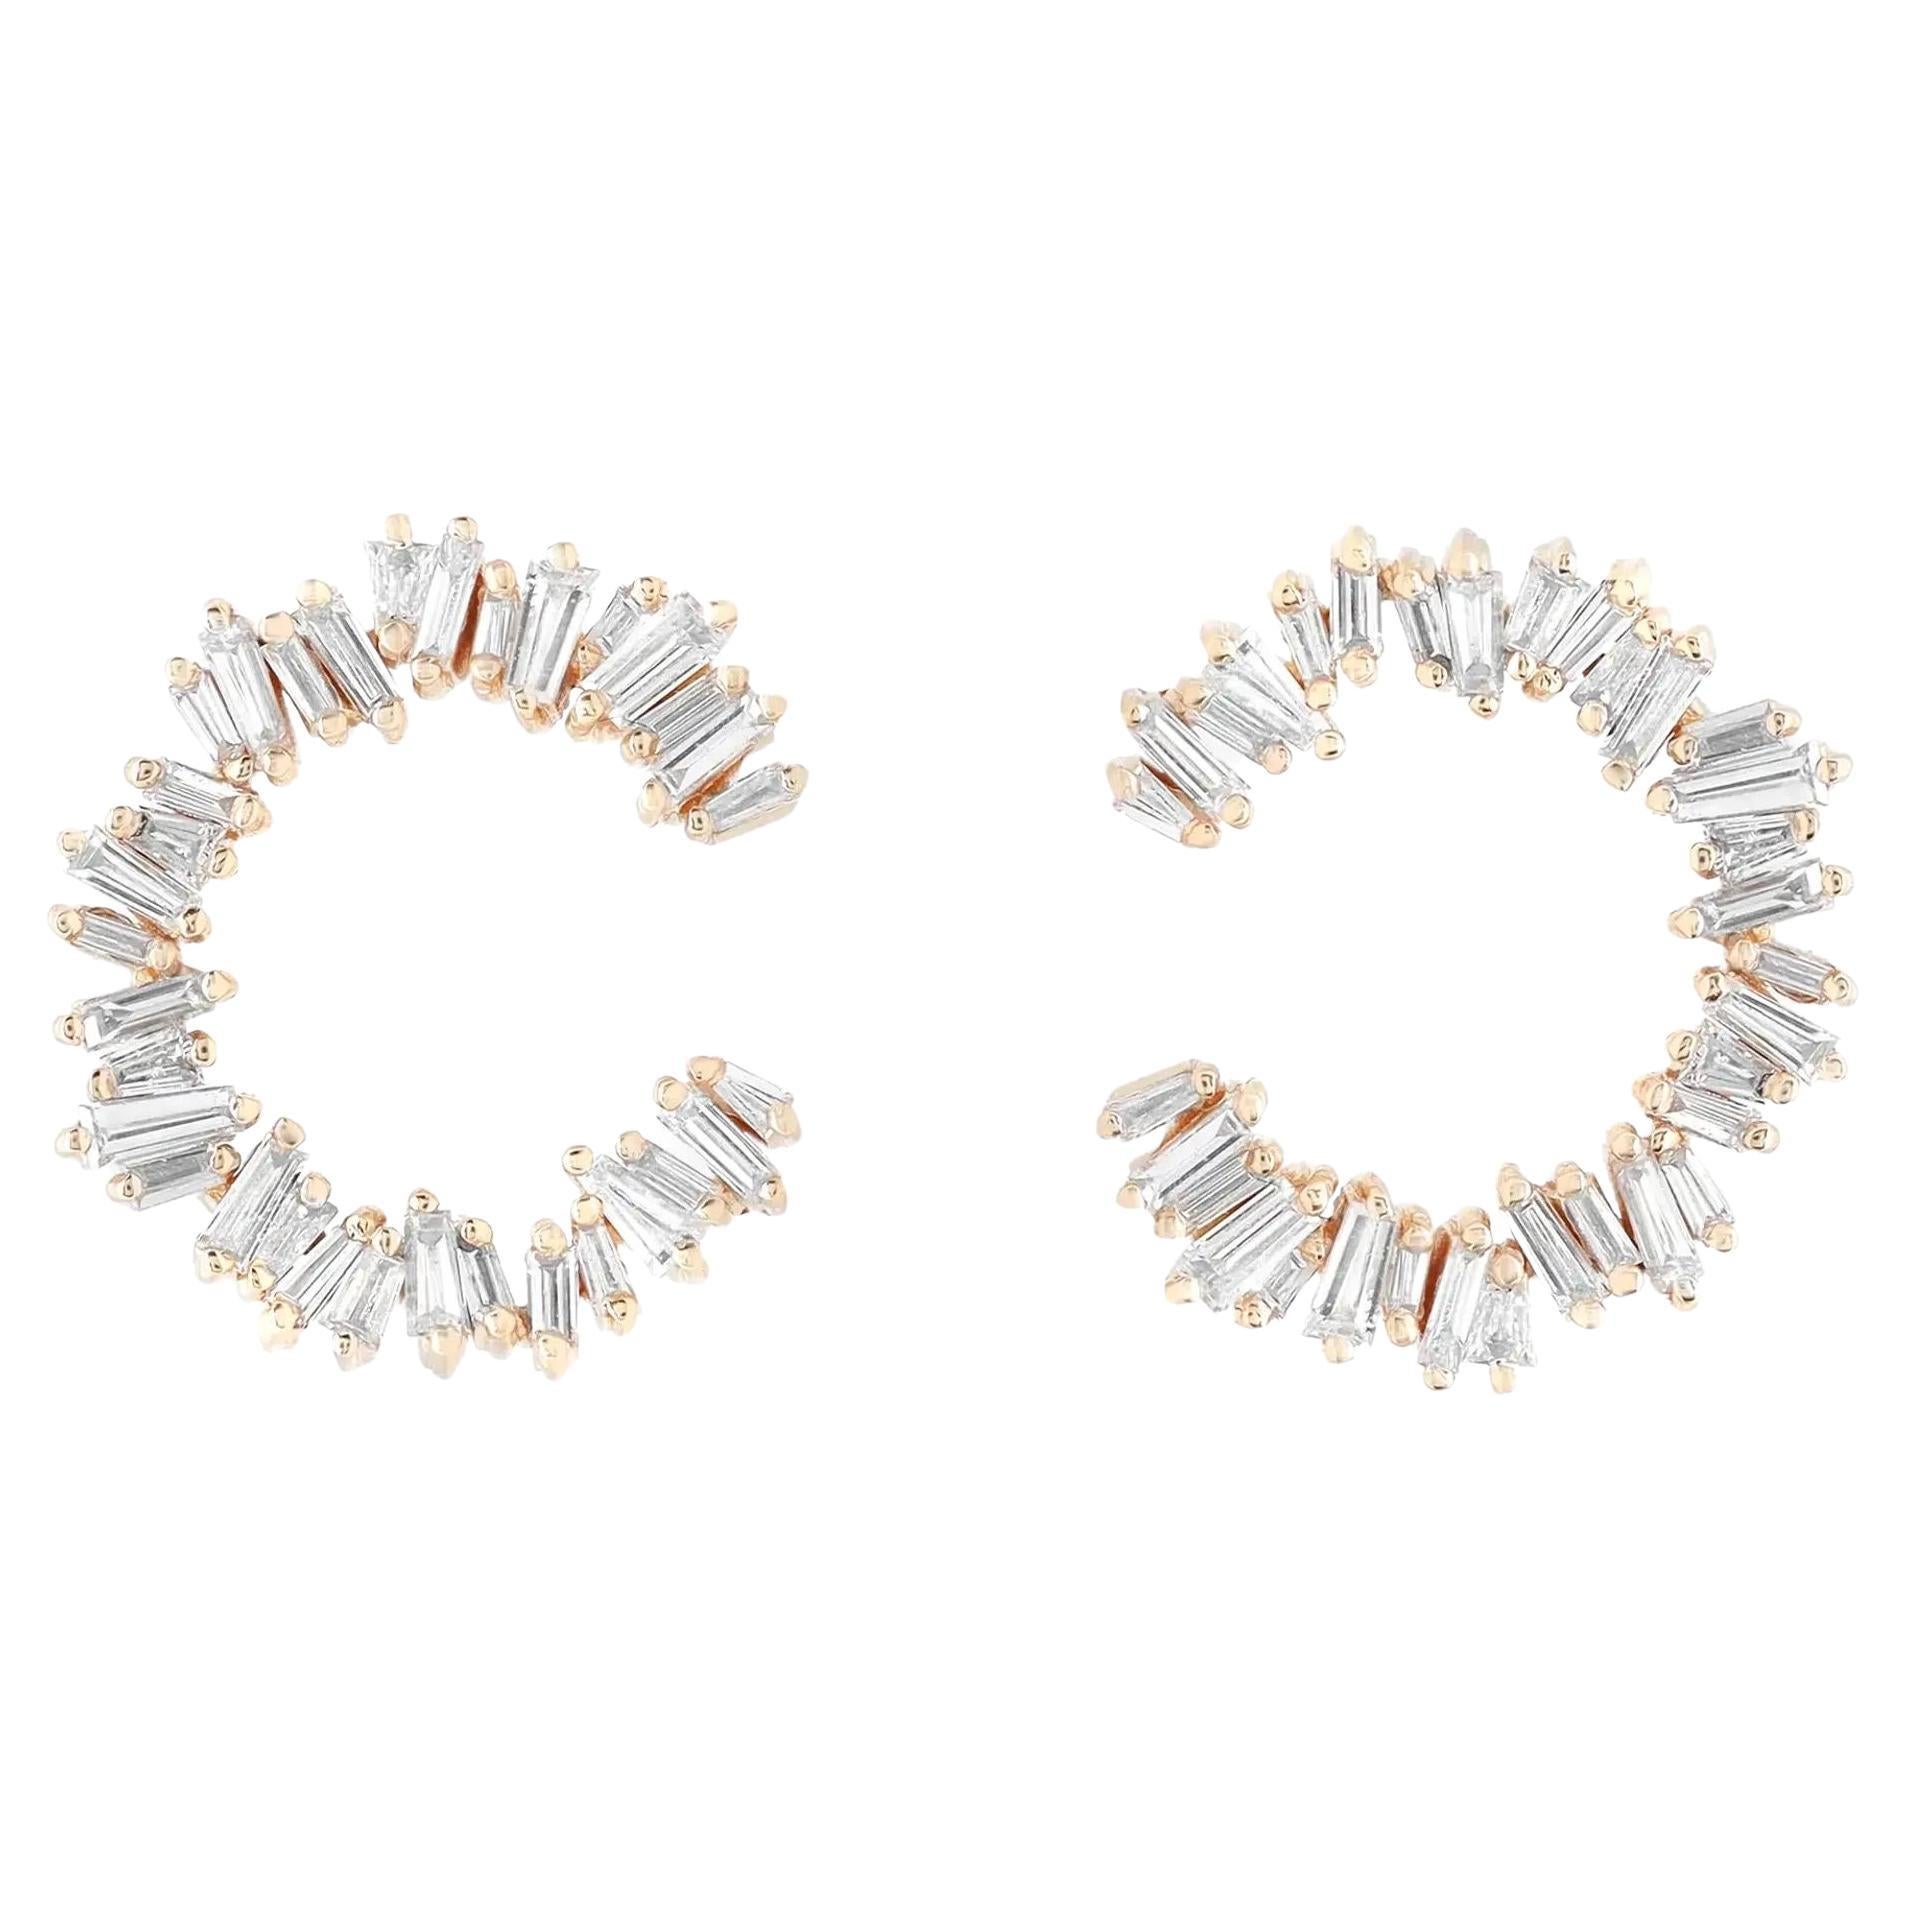 Rachel Koen 0.96Cttw Baguette Cut Diamond Stud Earrings 18K Yellow Gold